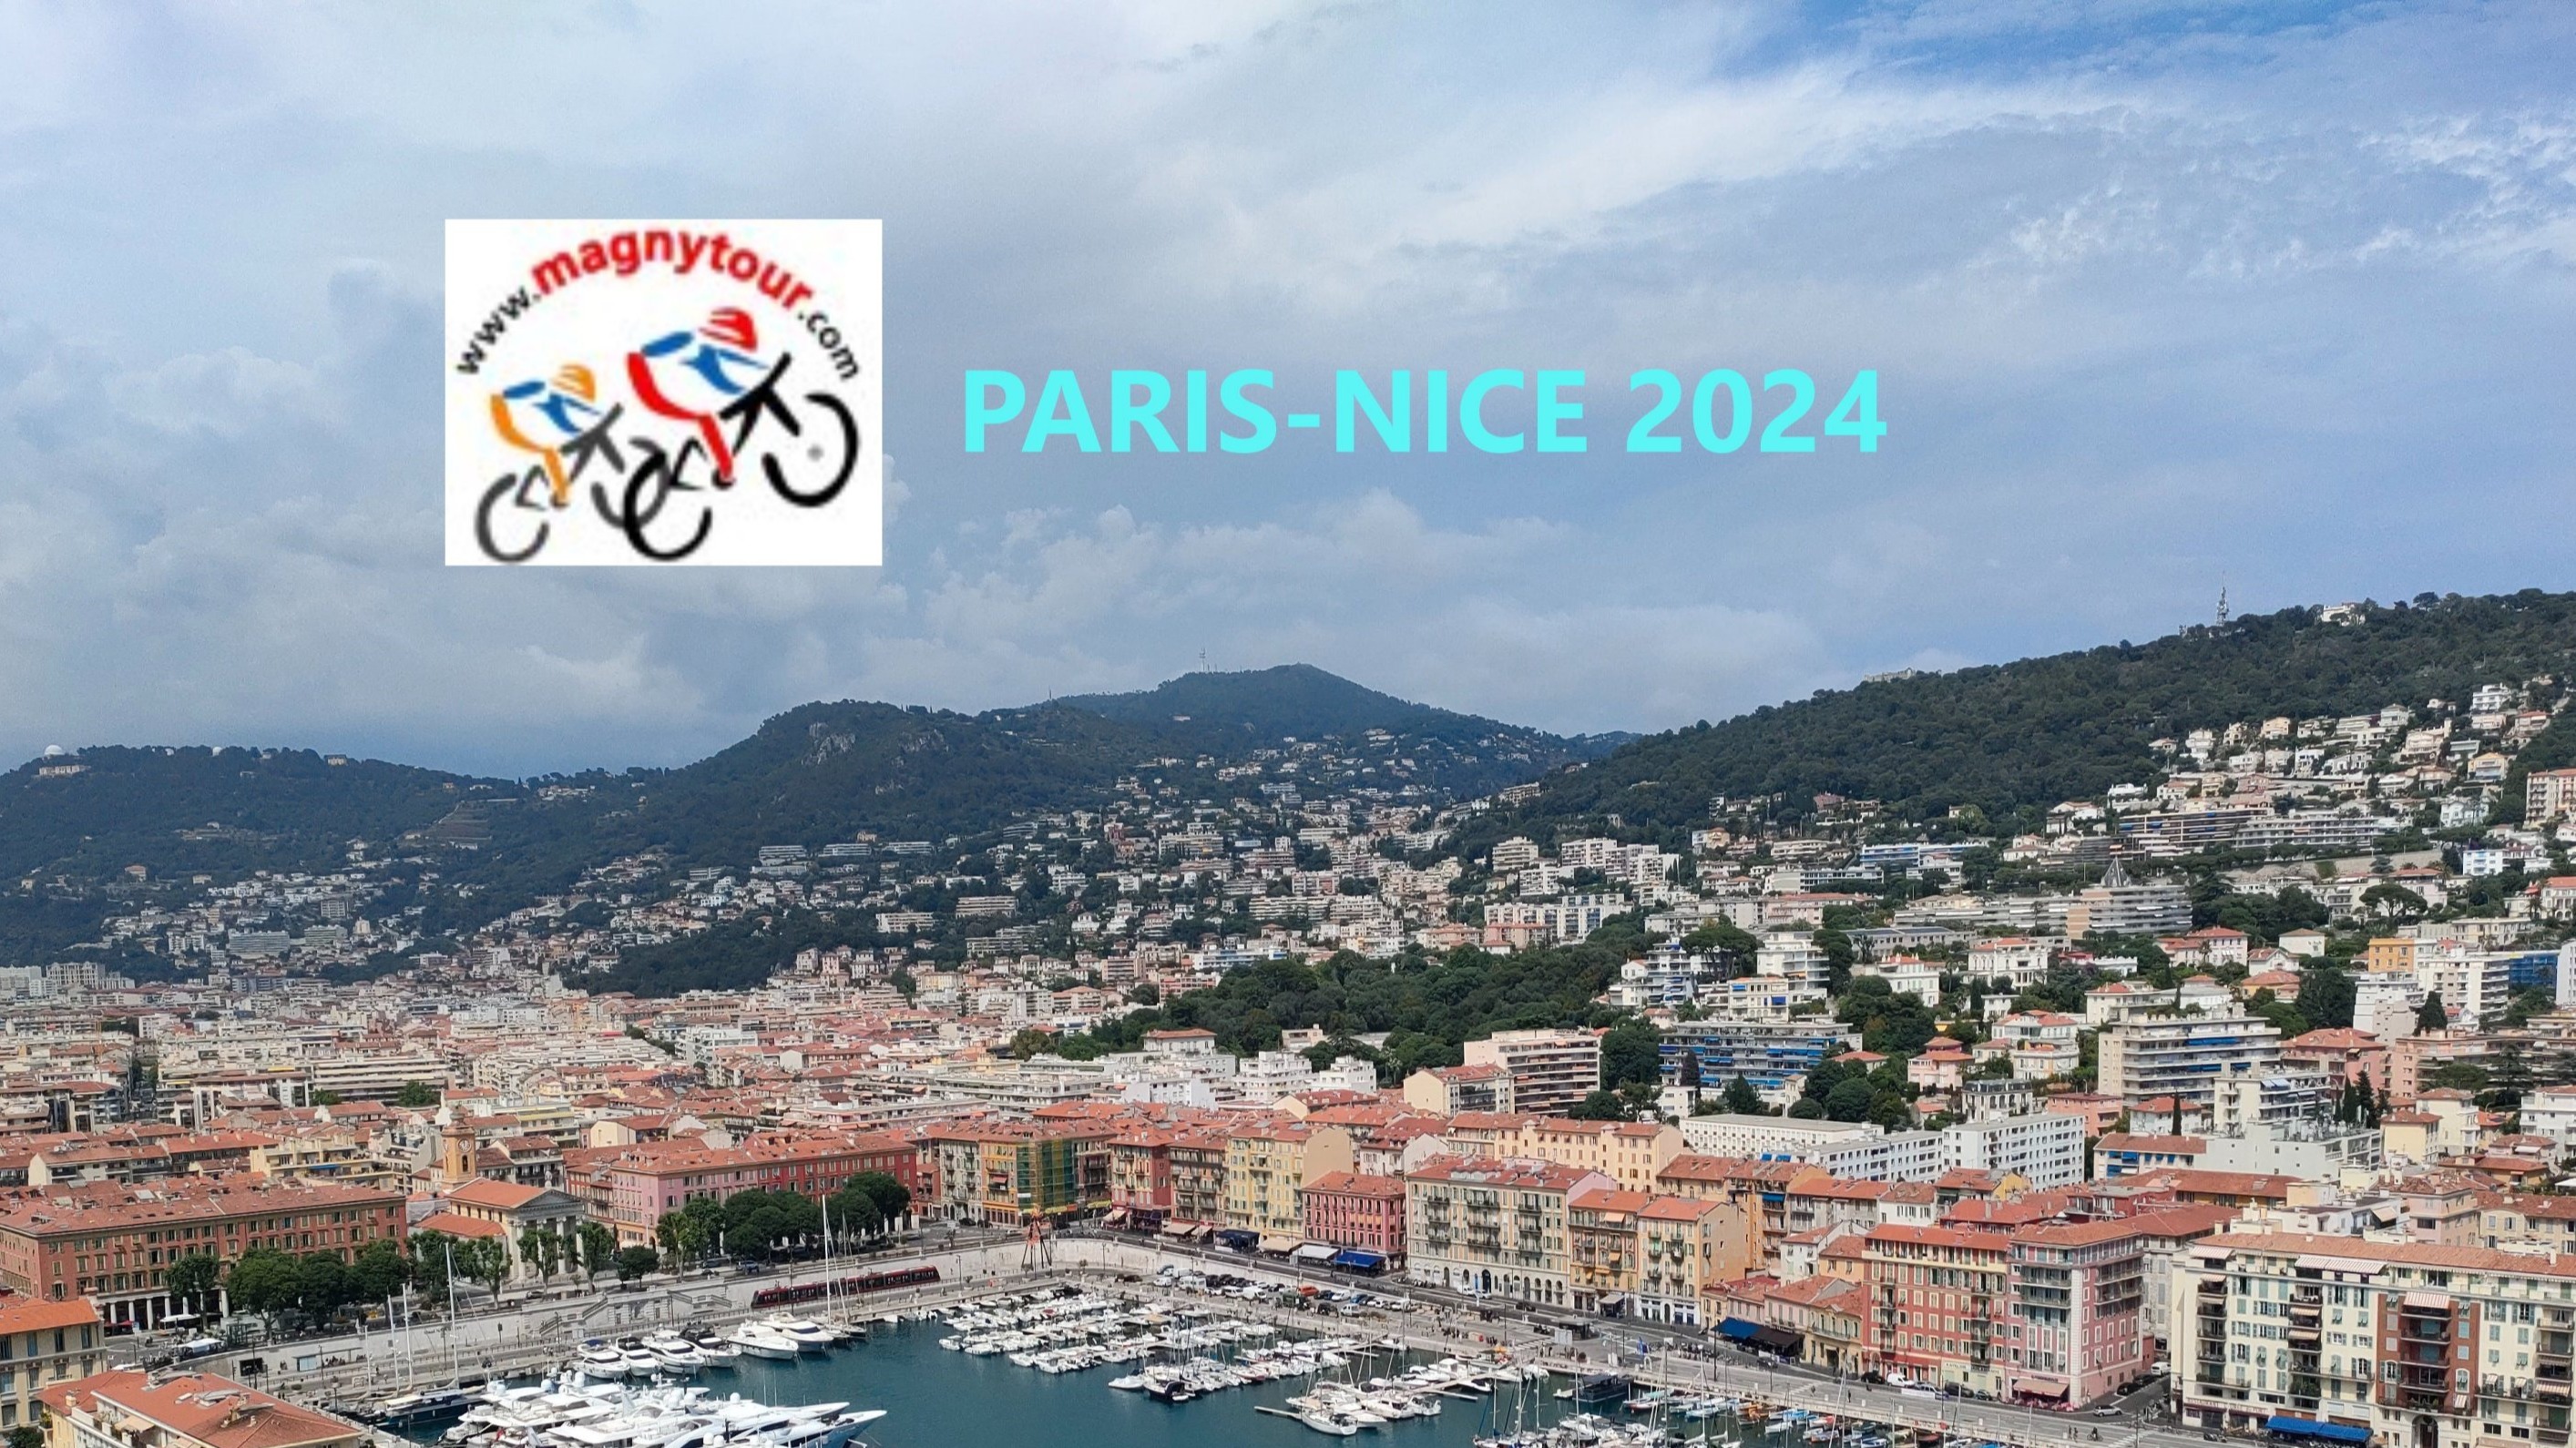 Paris-Nice 2024